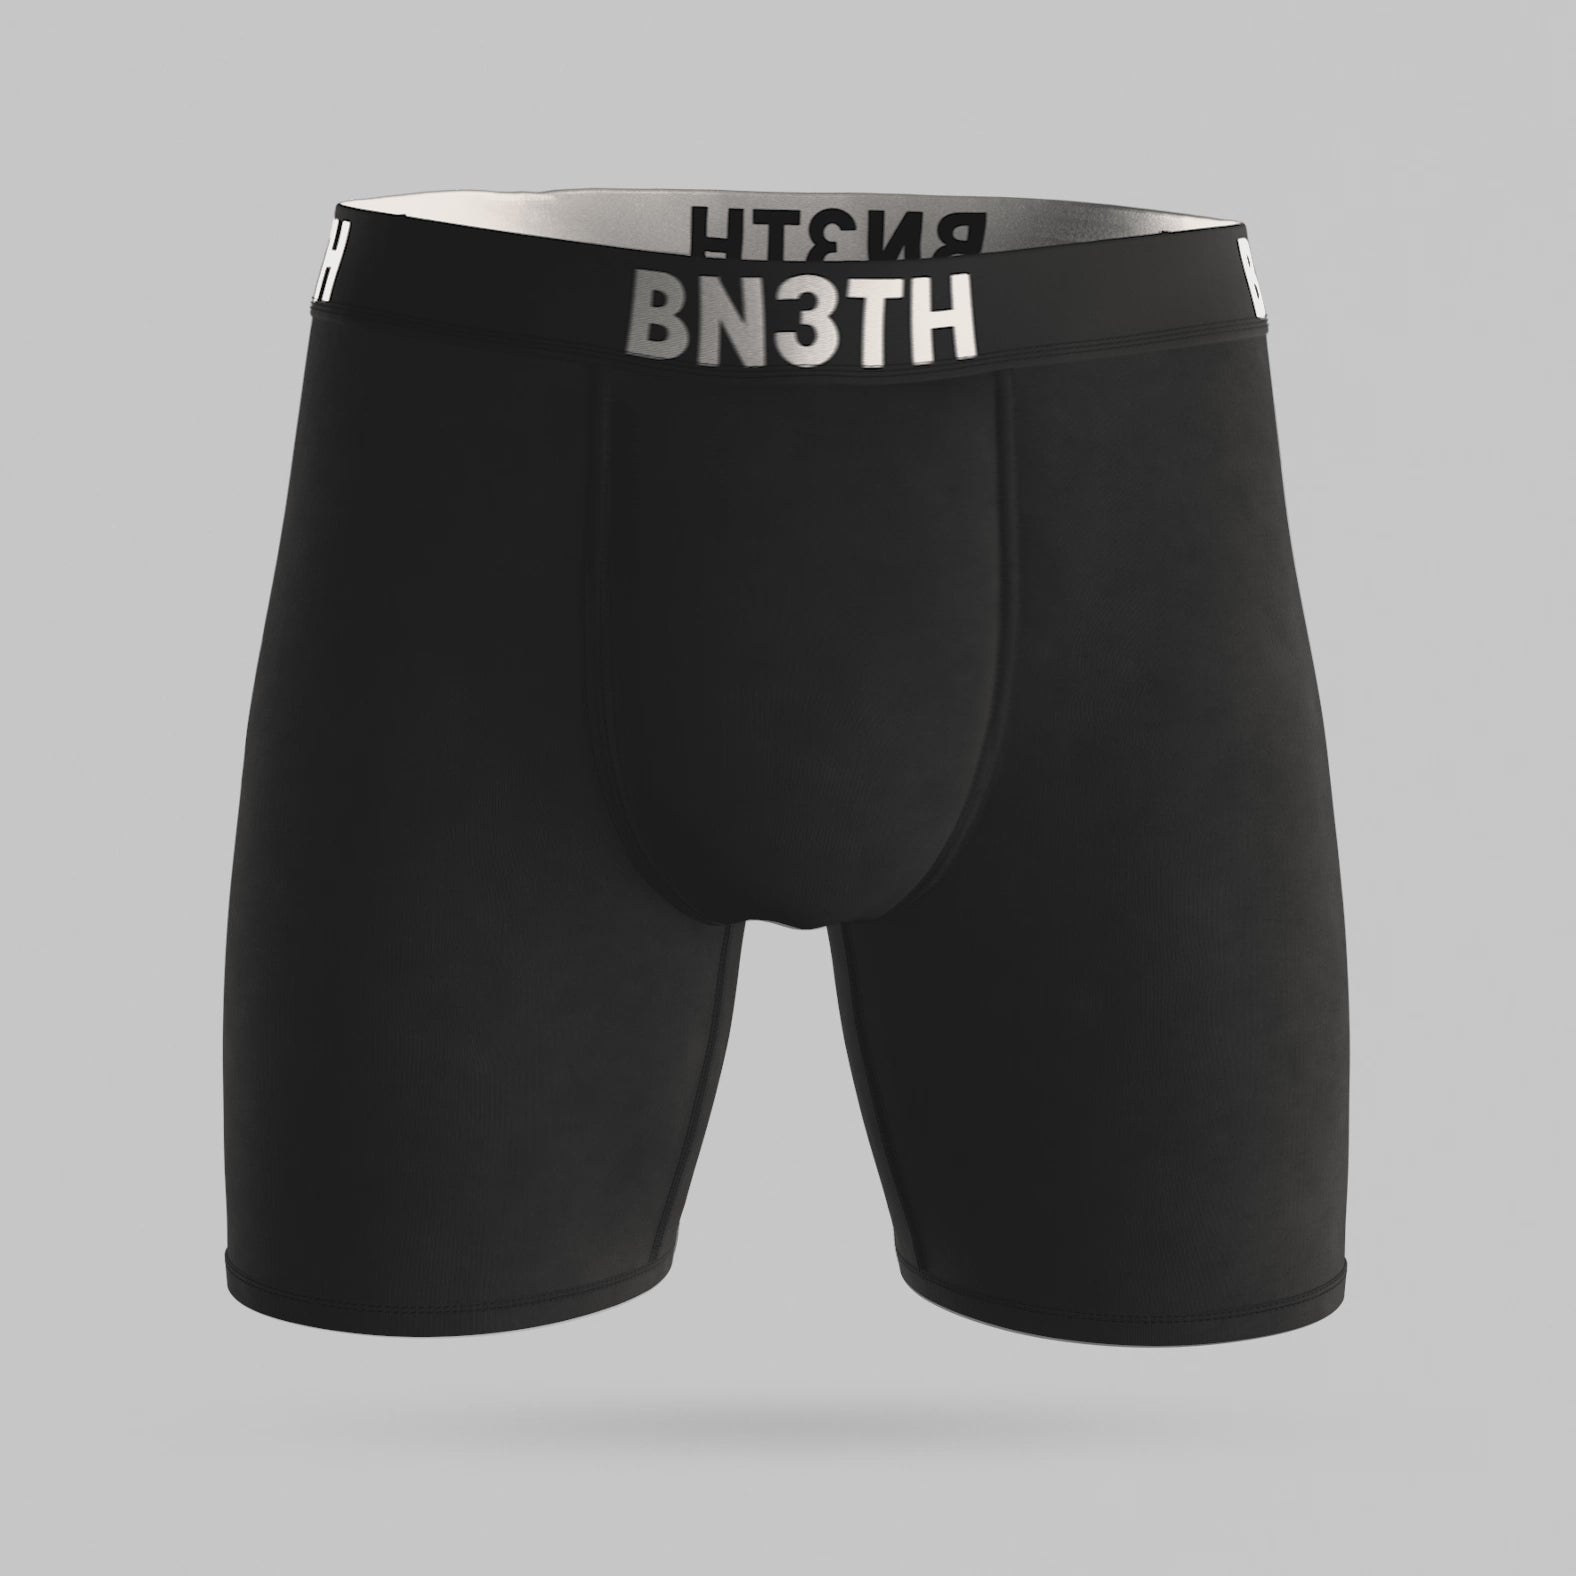 BN3TH Men's Classic Lite Boxer Brief (Black/Red, Small) 